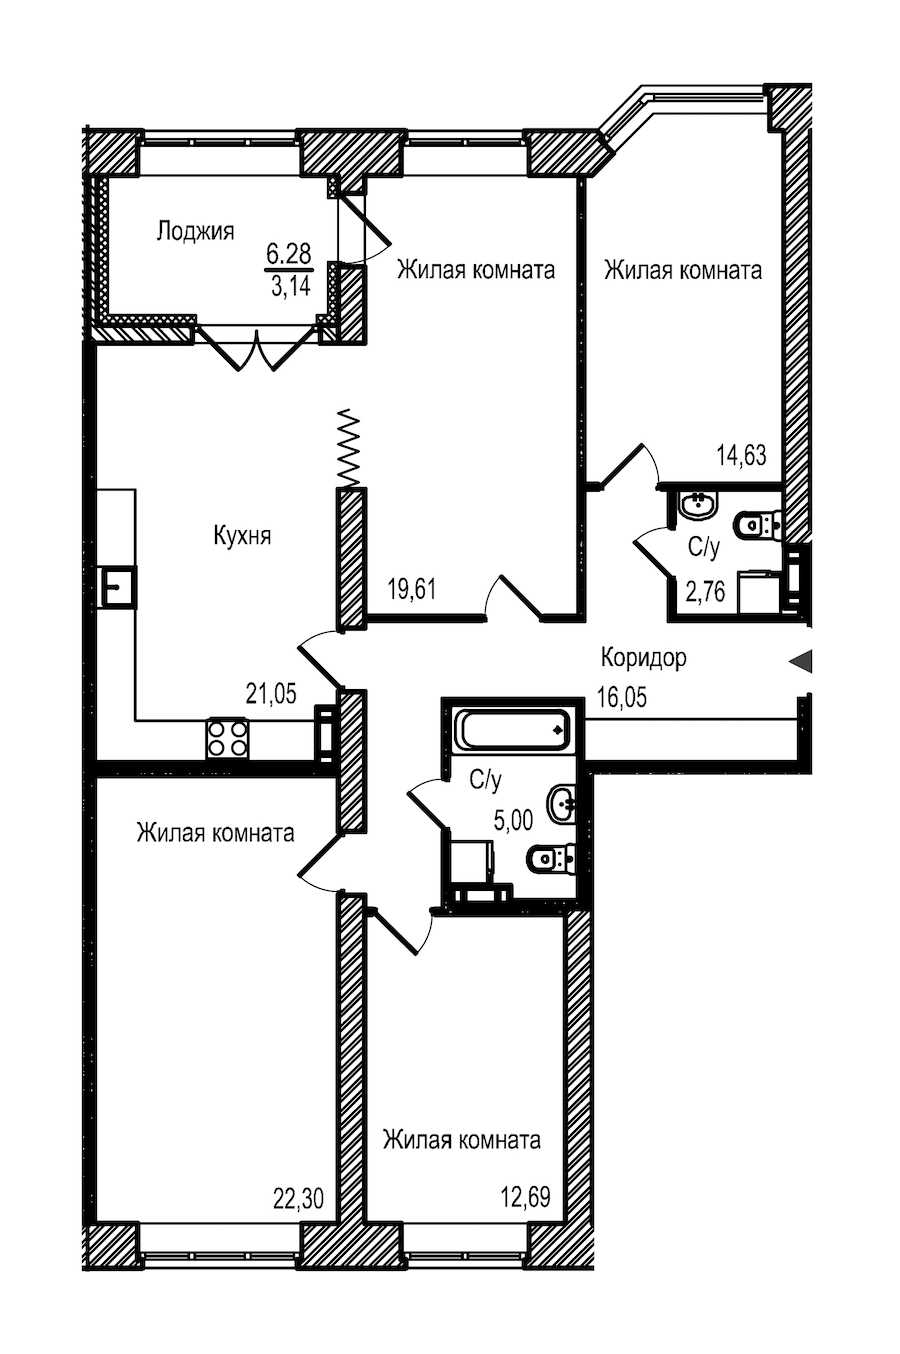 Четырехкомнатная квартира в : площадь 117.23 м2 , этаж: 3 – купить в Санкт-Петербурге